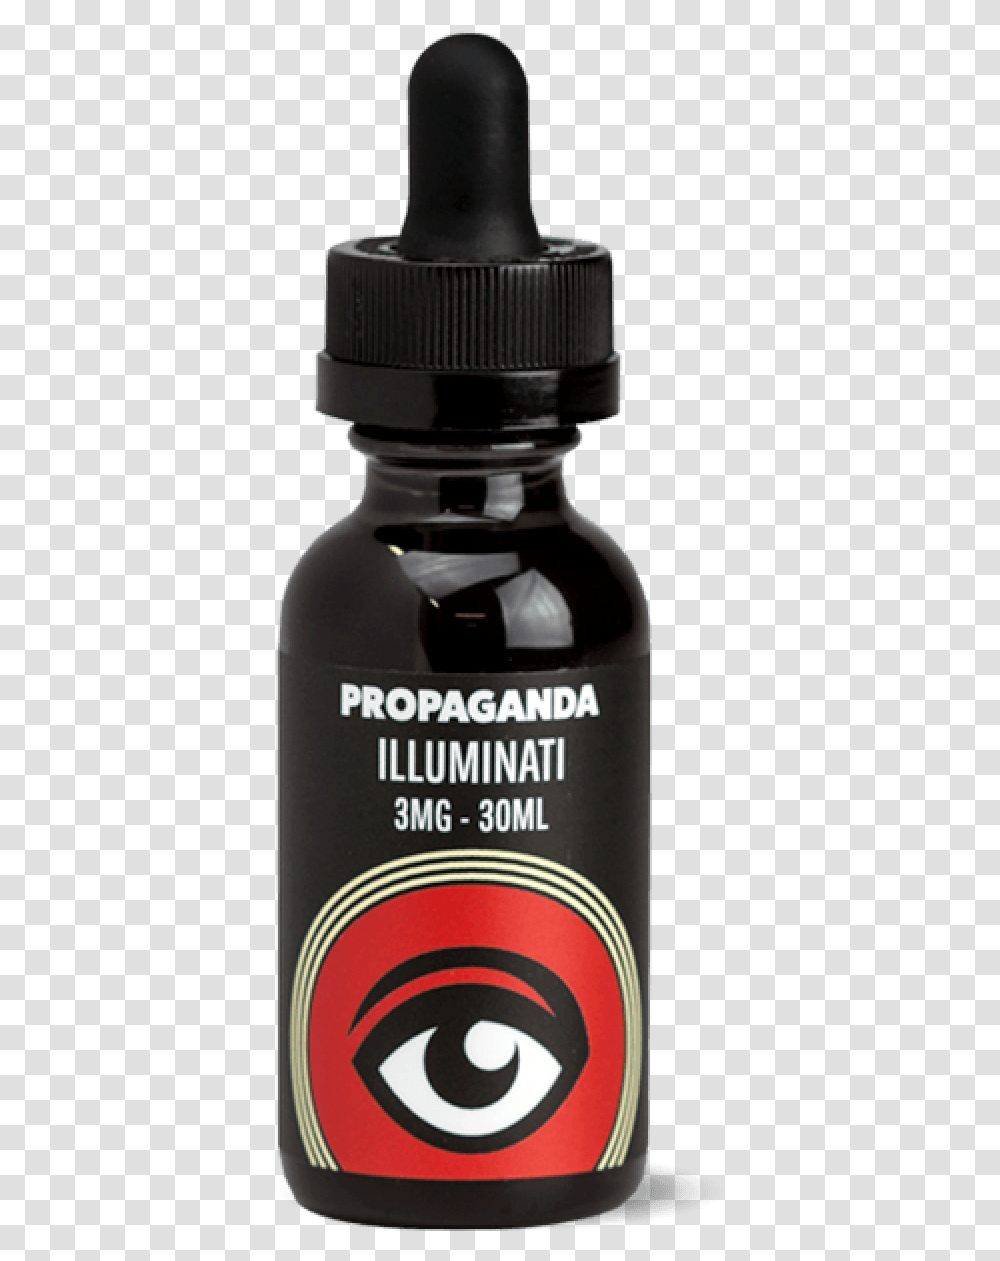 Illuminati E Liquid, Bottle, Cosmetics, Beer, Beverage Transparent Png